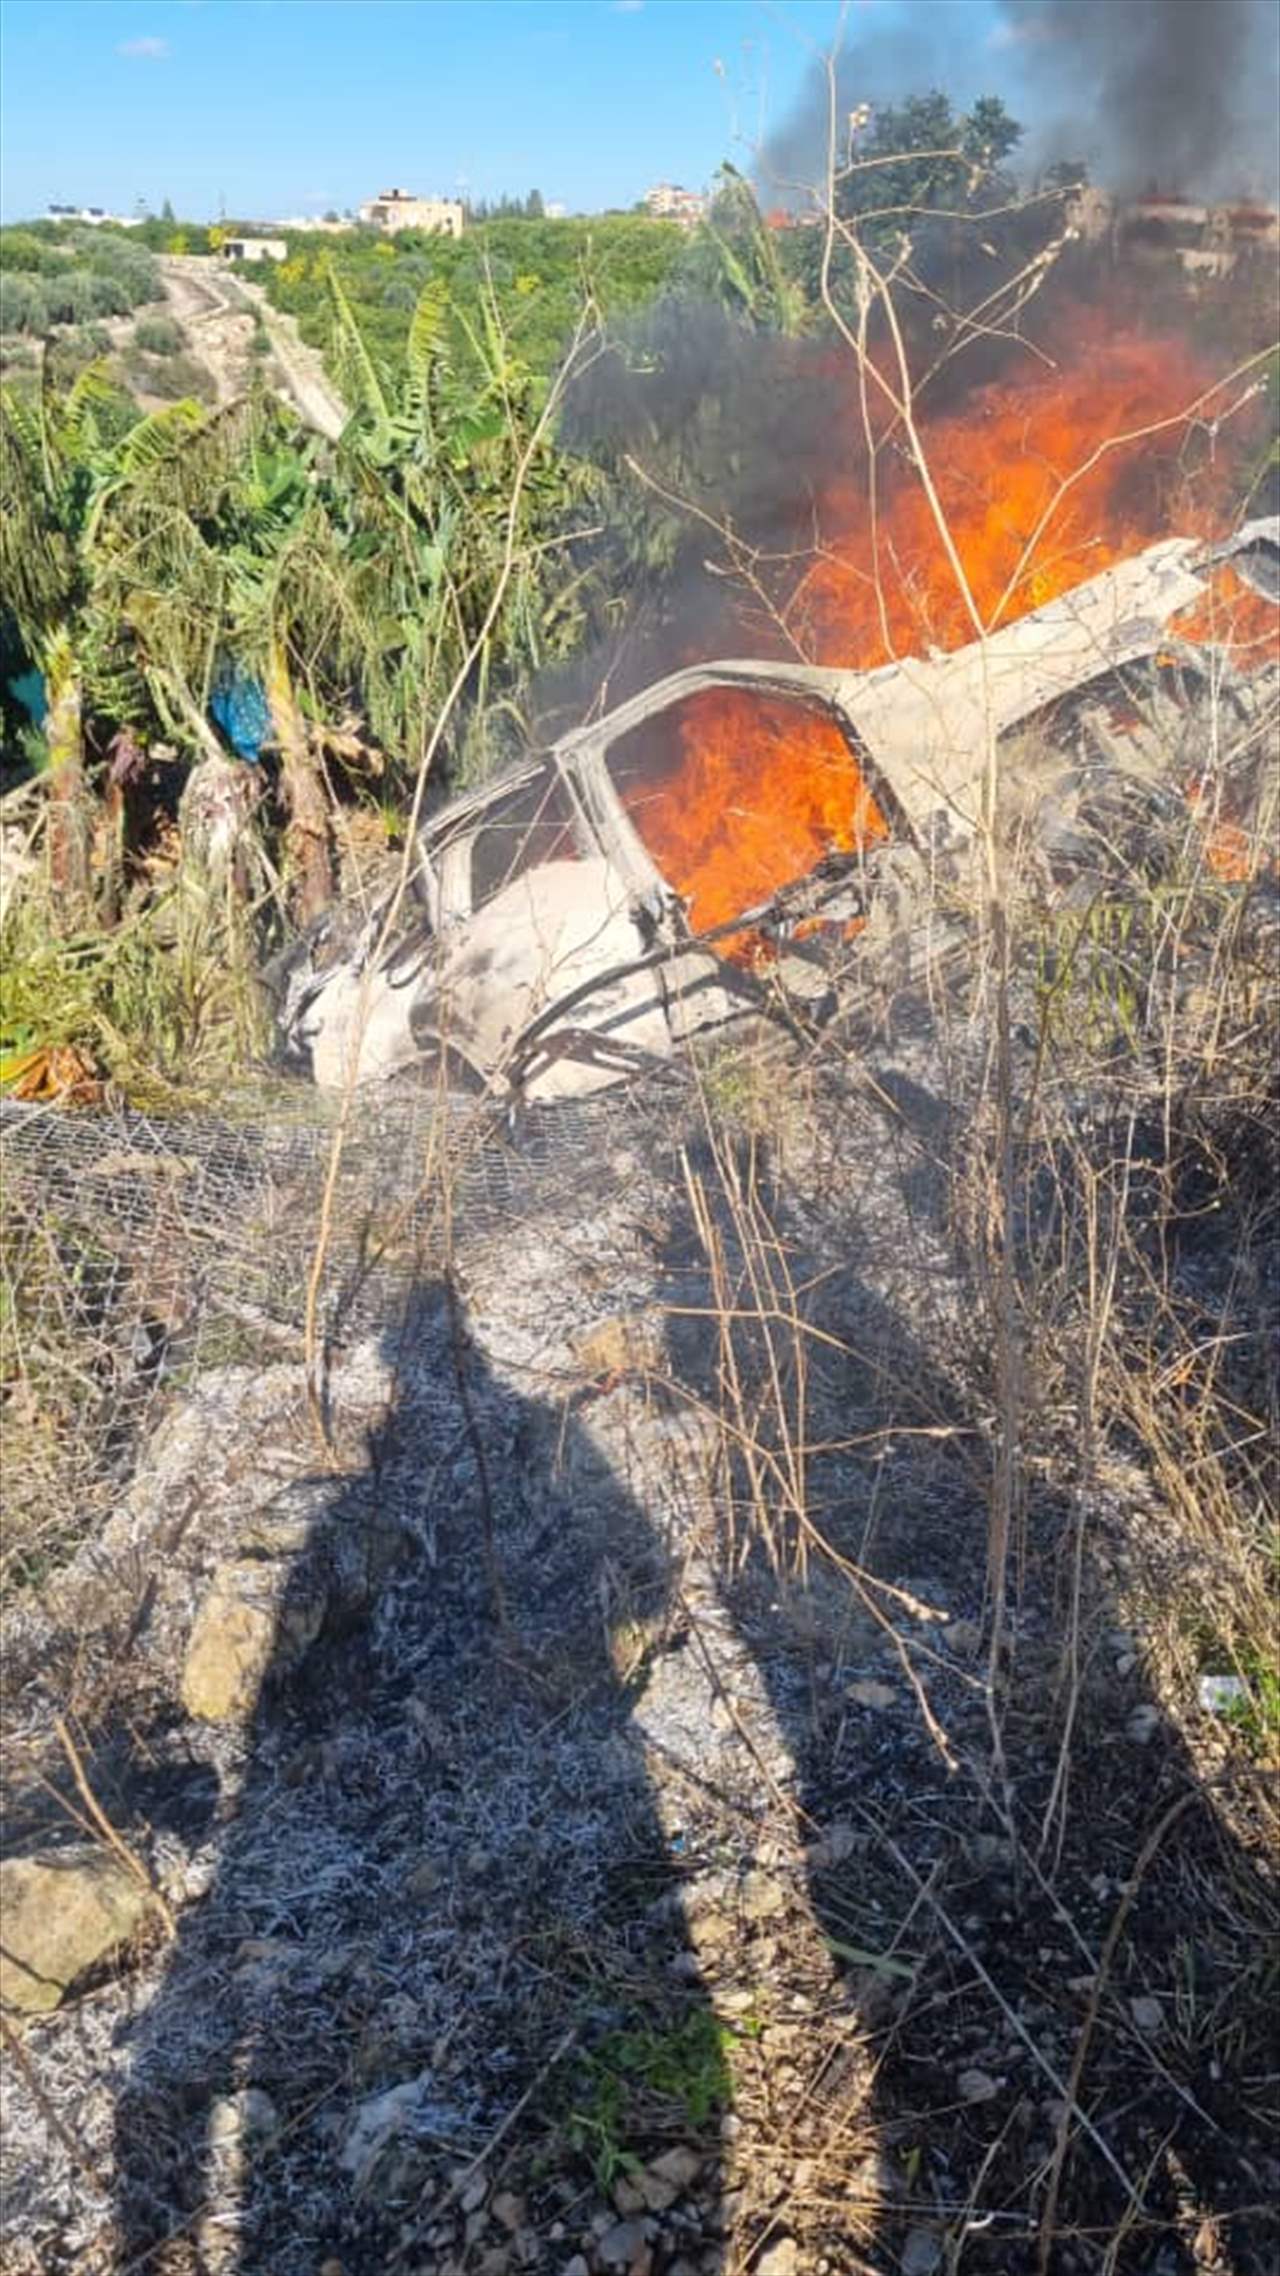 بالصور - مسيّرة إسرائيلية استهدفت سيارة من نوع رابيد على طريق فرعية بين الشعيتية والمعلية جنوبي صور  